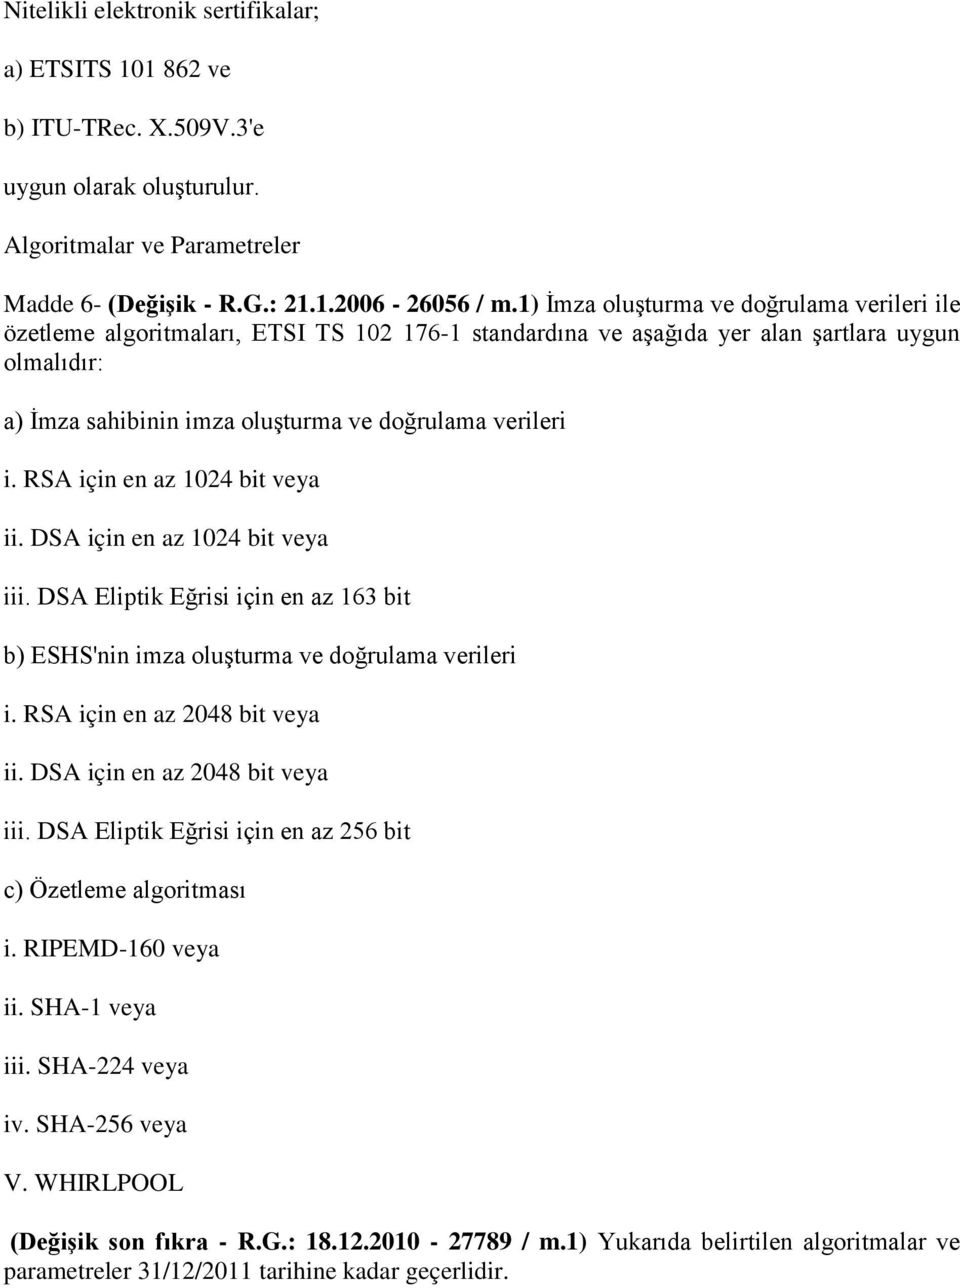 i. RSA için en az 1024 bit veya ii. DSA için en az 1024 bit veya iii. DSA Eliptik Eğrisi için en az 163 bit b) ESHS'nin imza oluşturma ve doğrulama verileri i. RSA için en az 2048 bit veya ii.